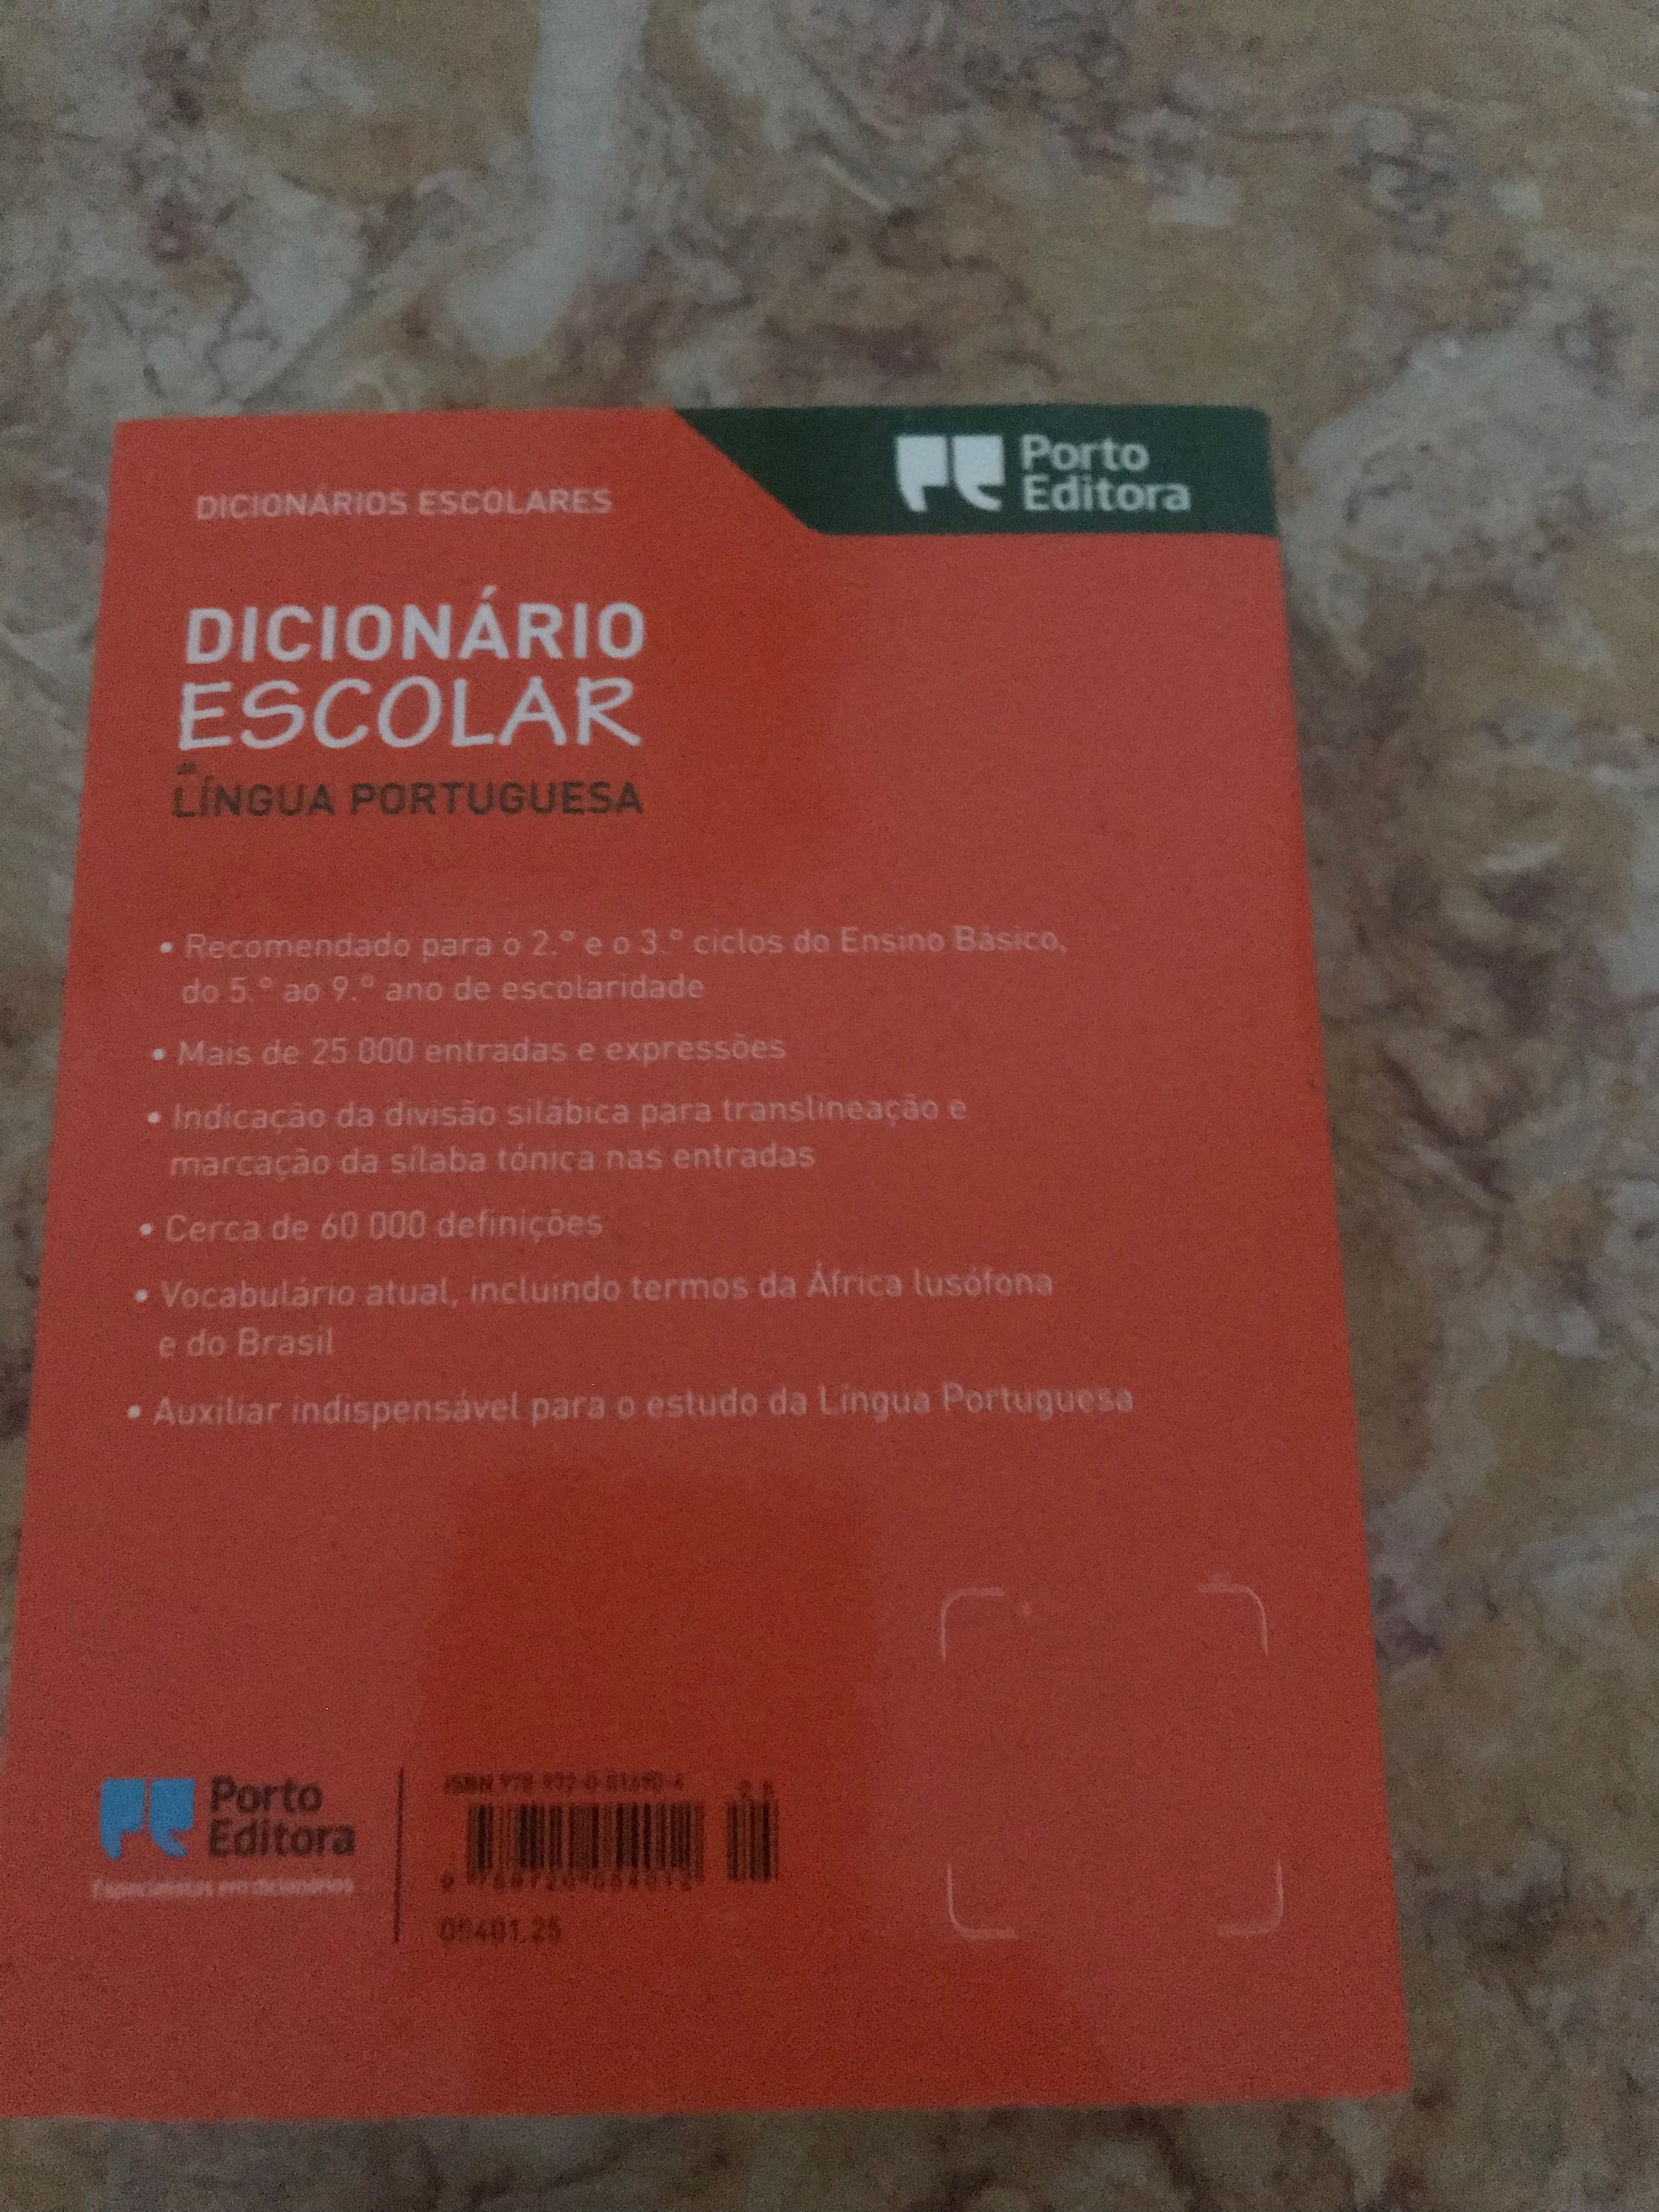 Dicionário Escolar de lLngua Portuguesa